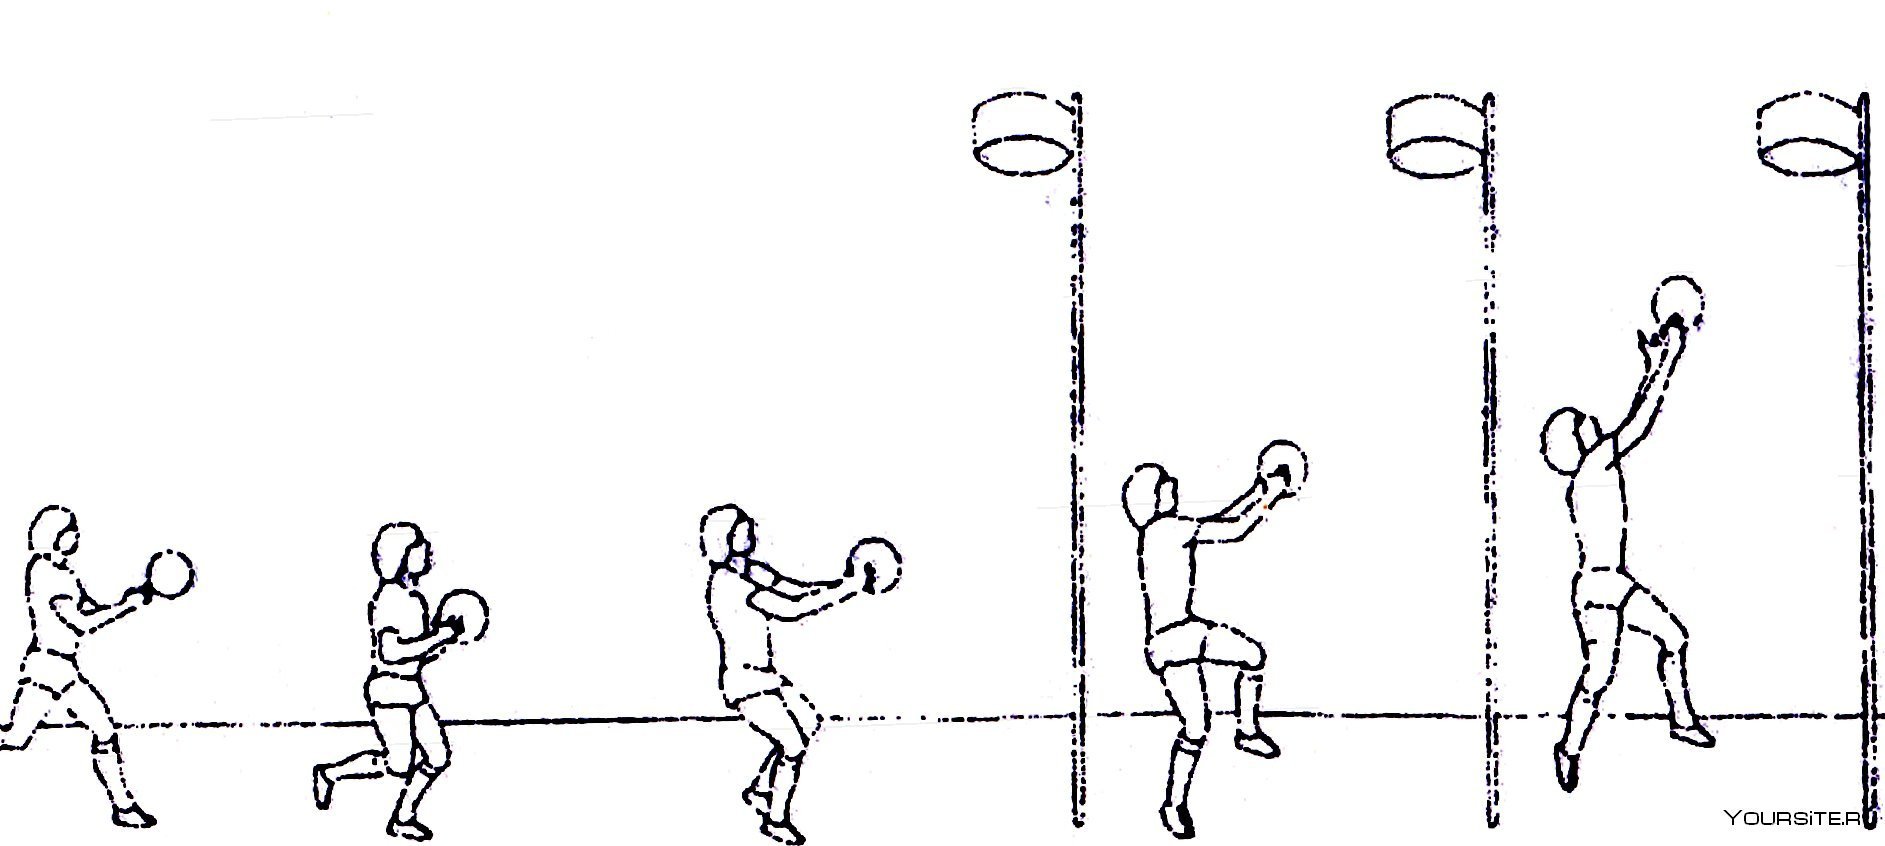 Передача мяча одной рукой снизу. Бросок мяча в кольцо снизу техника. Ведение 2 шага бросок баскетбол. Бросок мяча 2 руками в баскетболе снизу. Бросок в кольцо мяча вид сбоку.